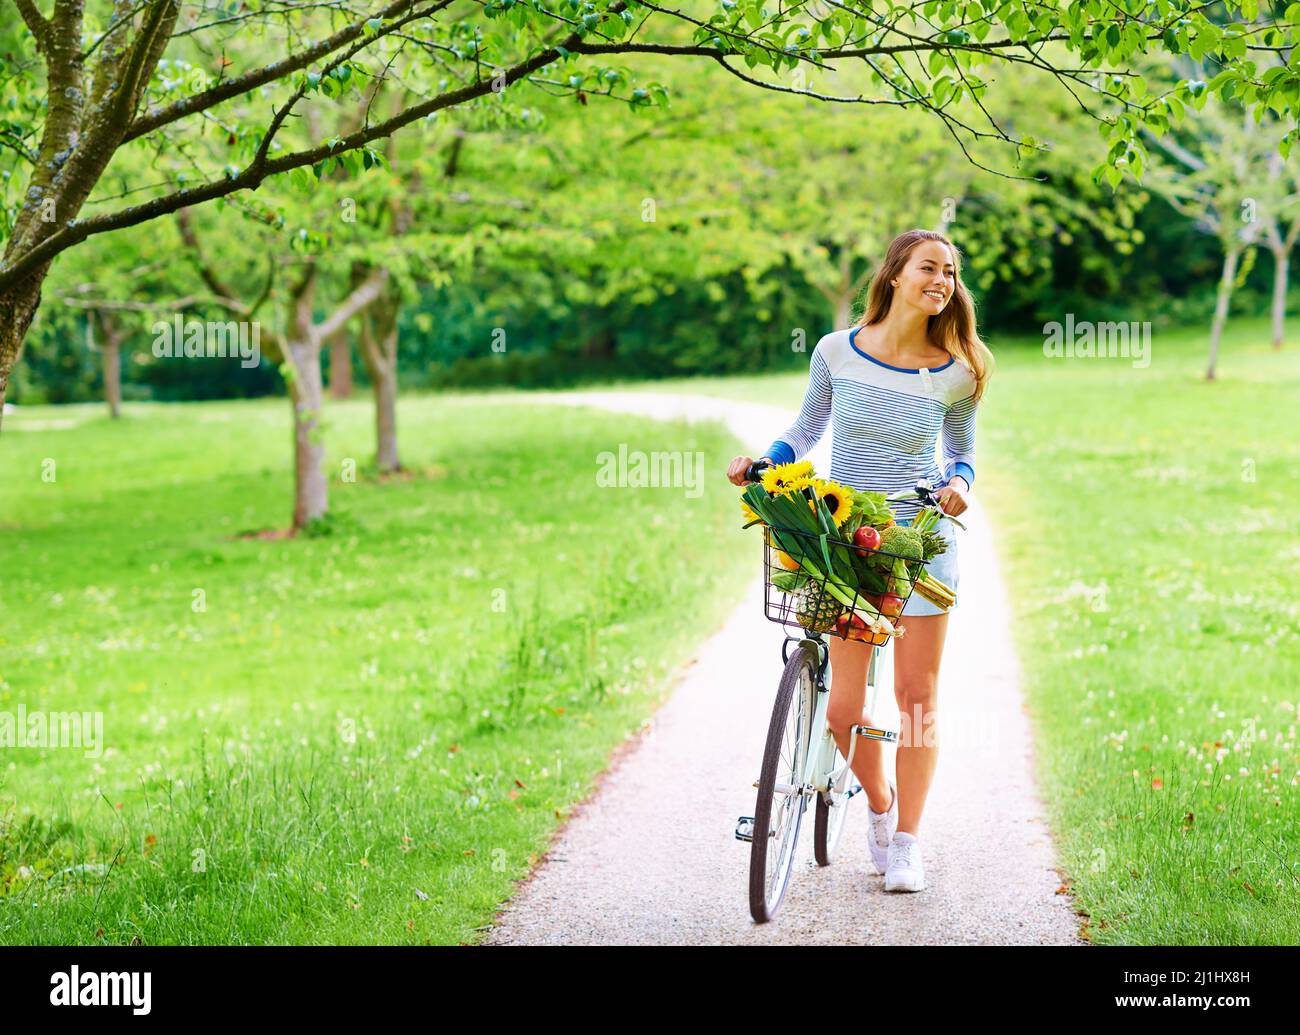 La route panoramique est toujours meilleure. Photo d'une jeune femme en vélo dans le parc. Banque D'Images